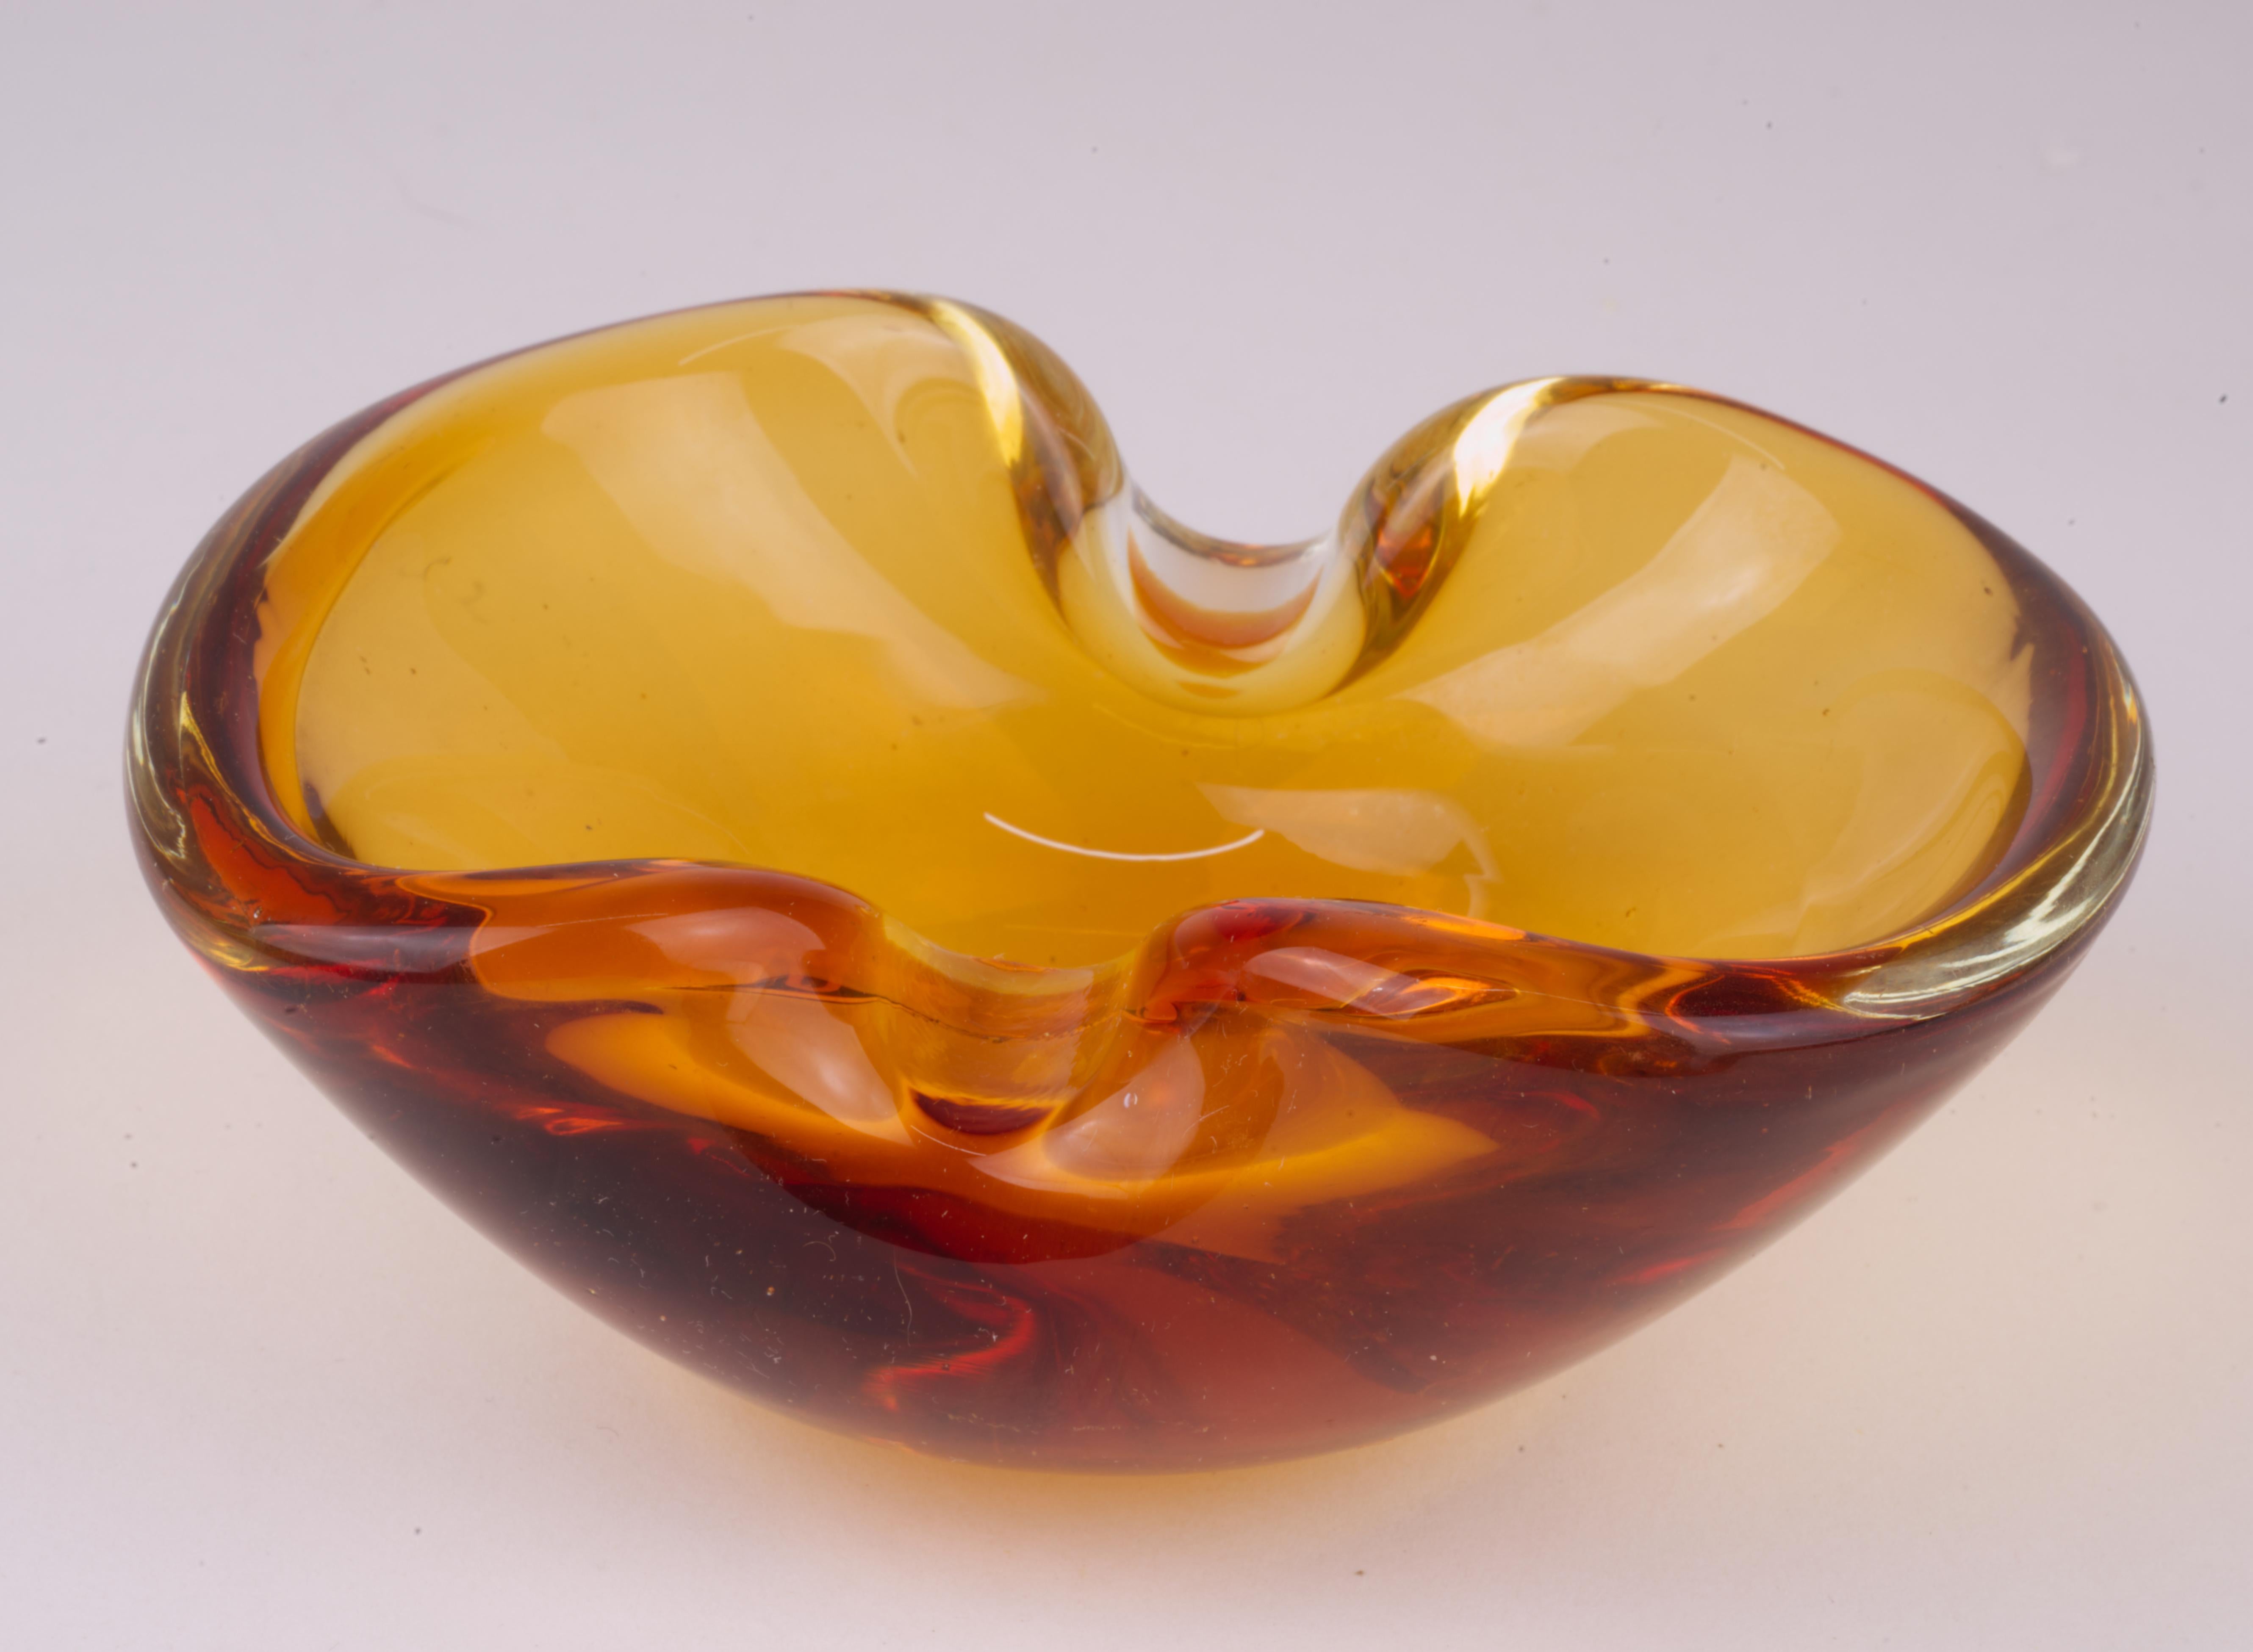  Die Geodenschale wurde in Murano, Italien, in Sommerso-Technik aus bernsteinfarbenem Glas mit einer Schicht aus Klarglas mundgeblasen. 

Die Schale ist nicht signiert; ähnliche Schalen in diesem Stil wurden von mehreren Künstlern hergestellt,